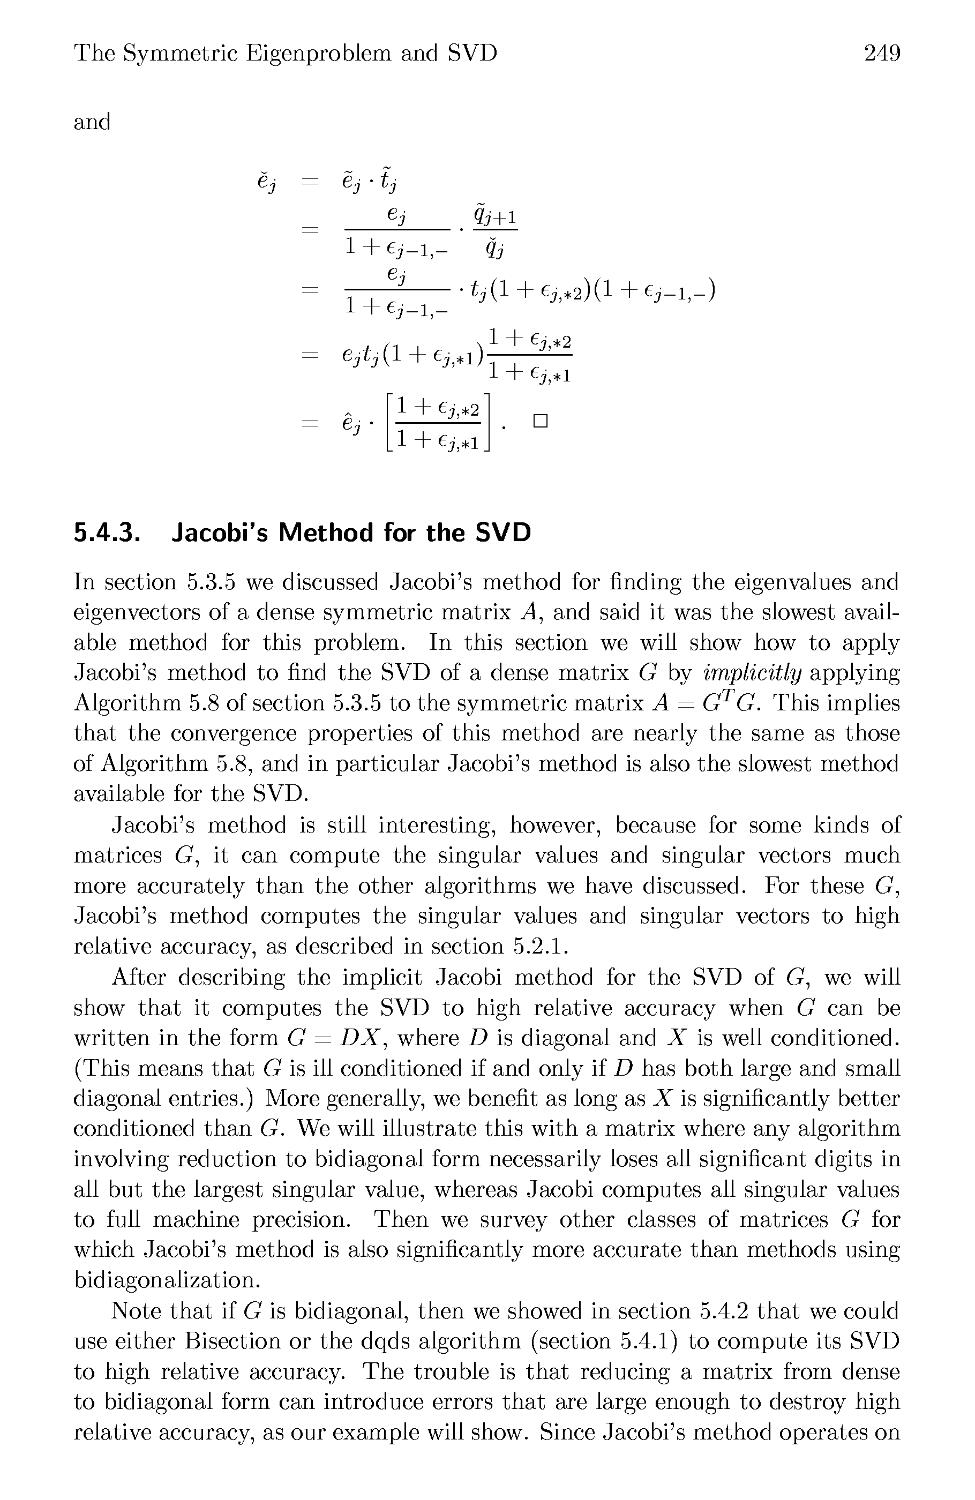 5.4.3 Jacobi's Method for the SVD